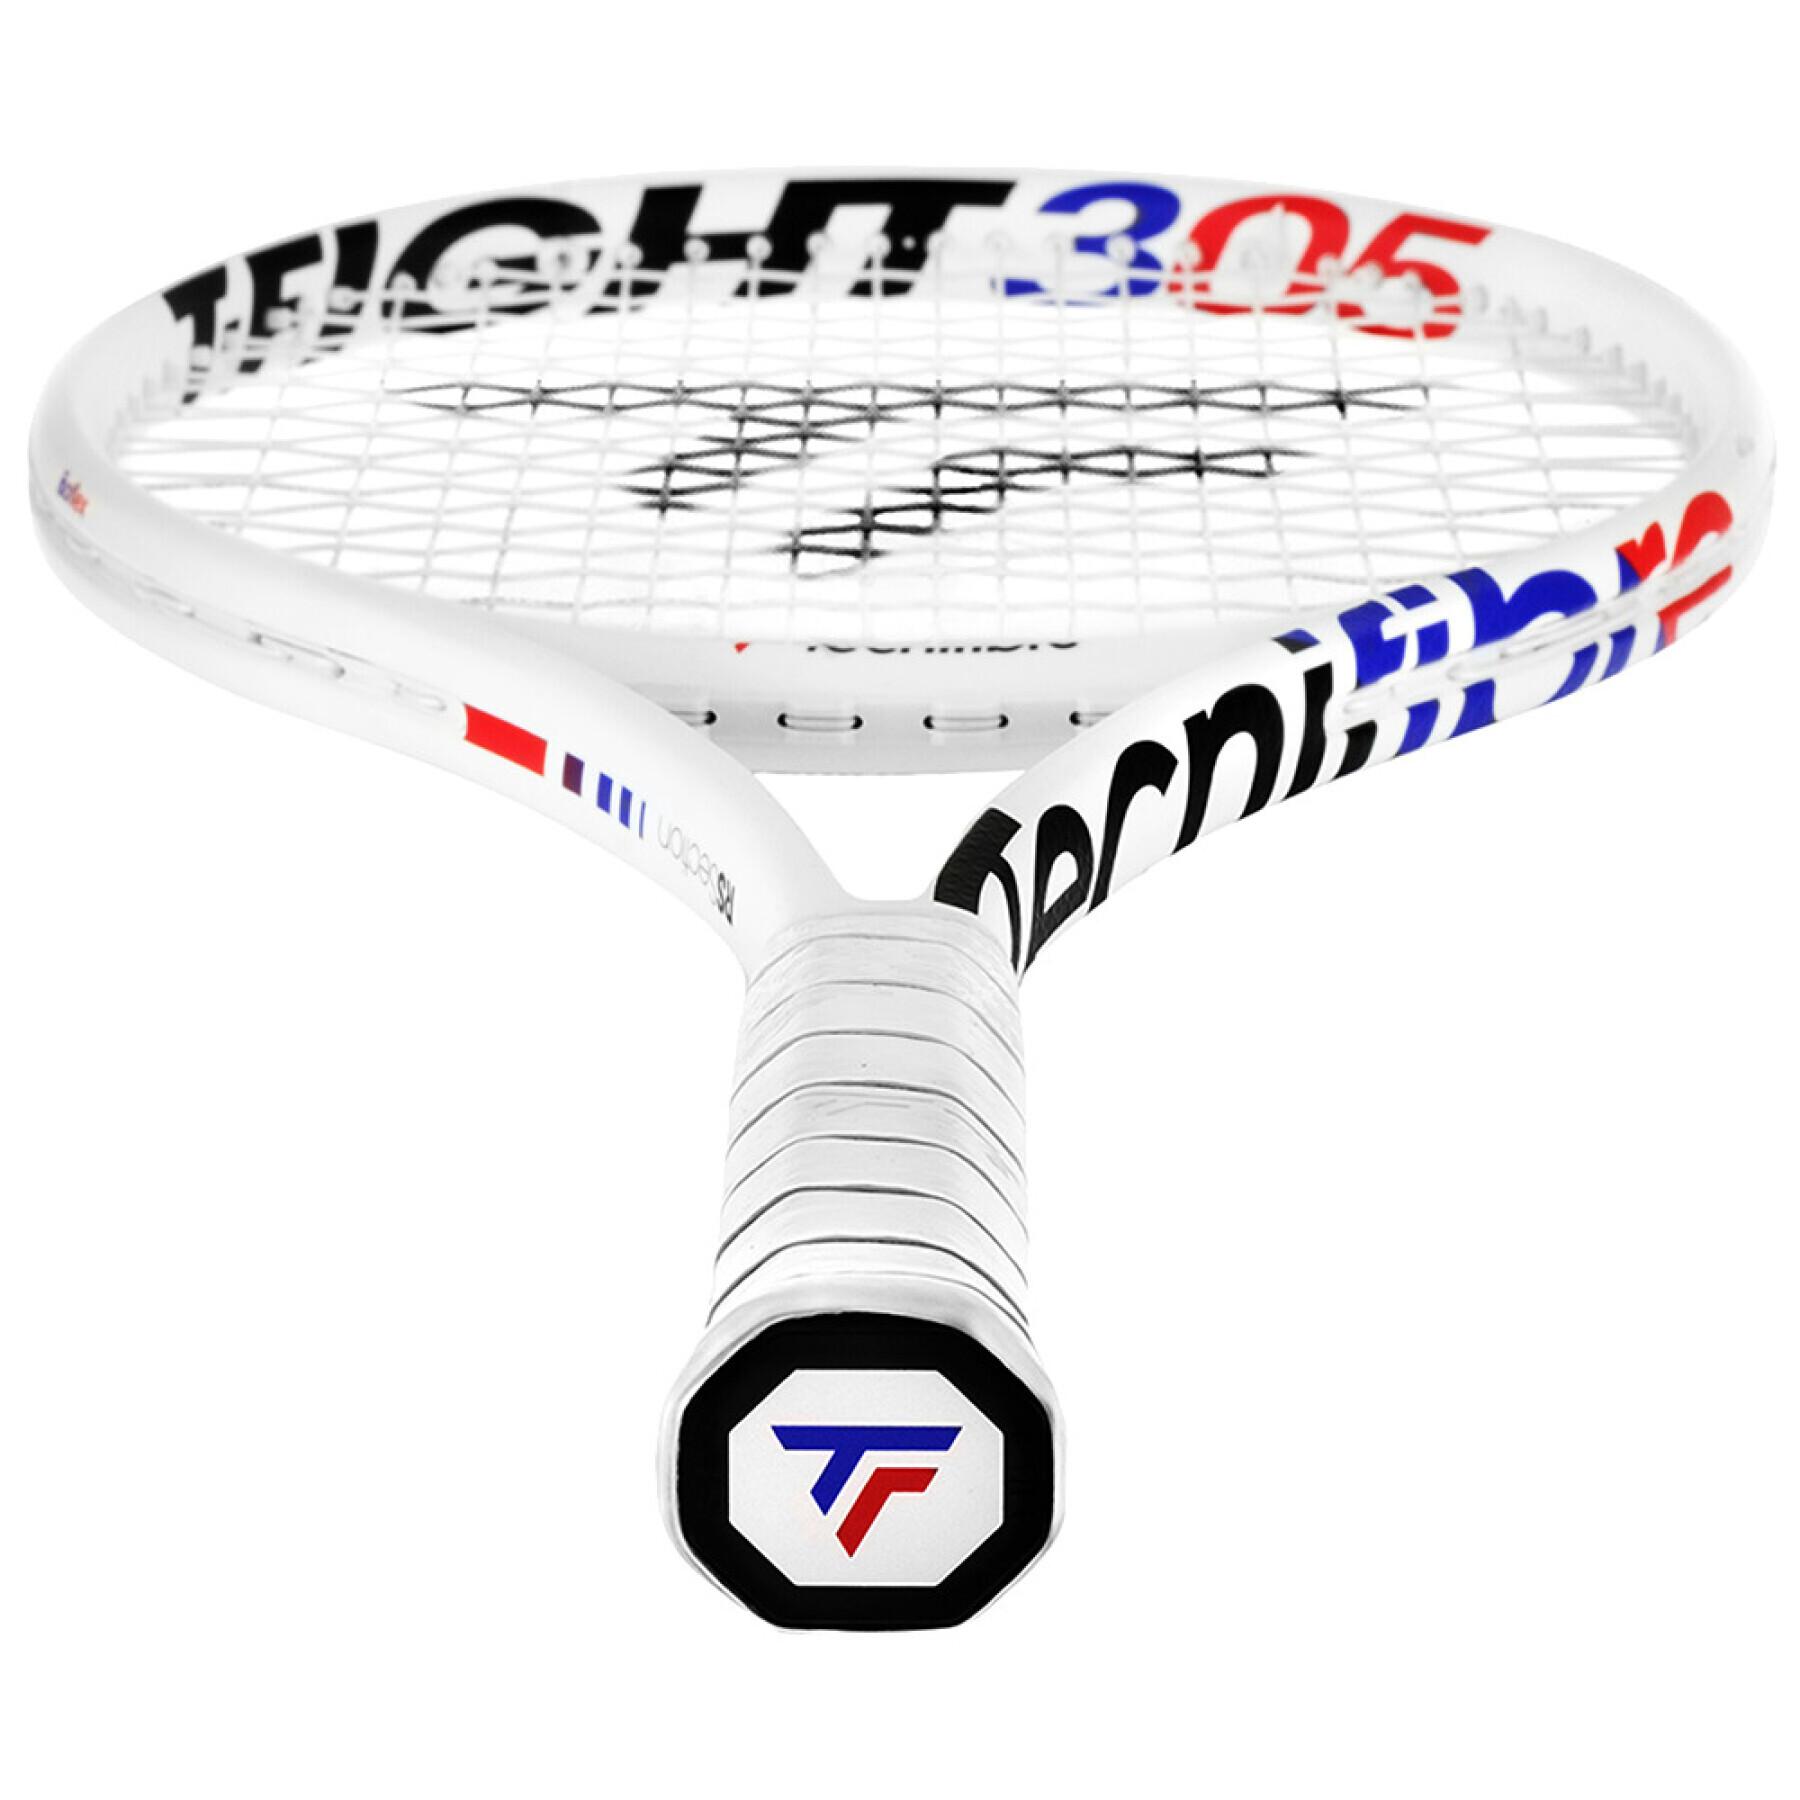 Raqueta de tenis Tecnifibre T-fight 305 Isoflex